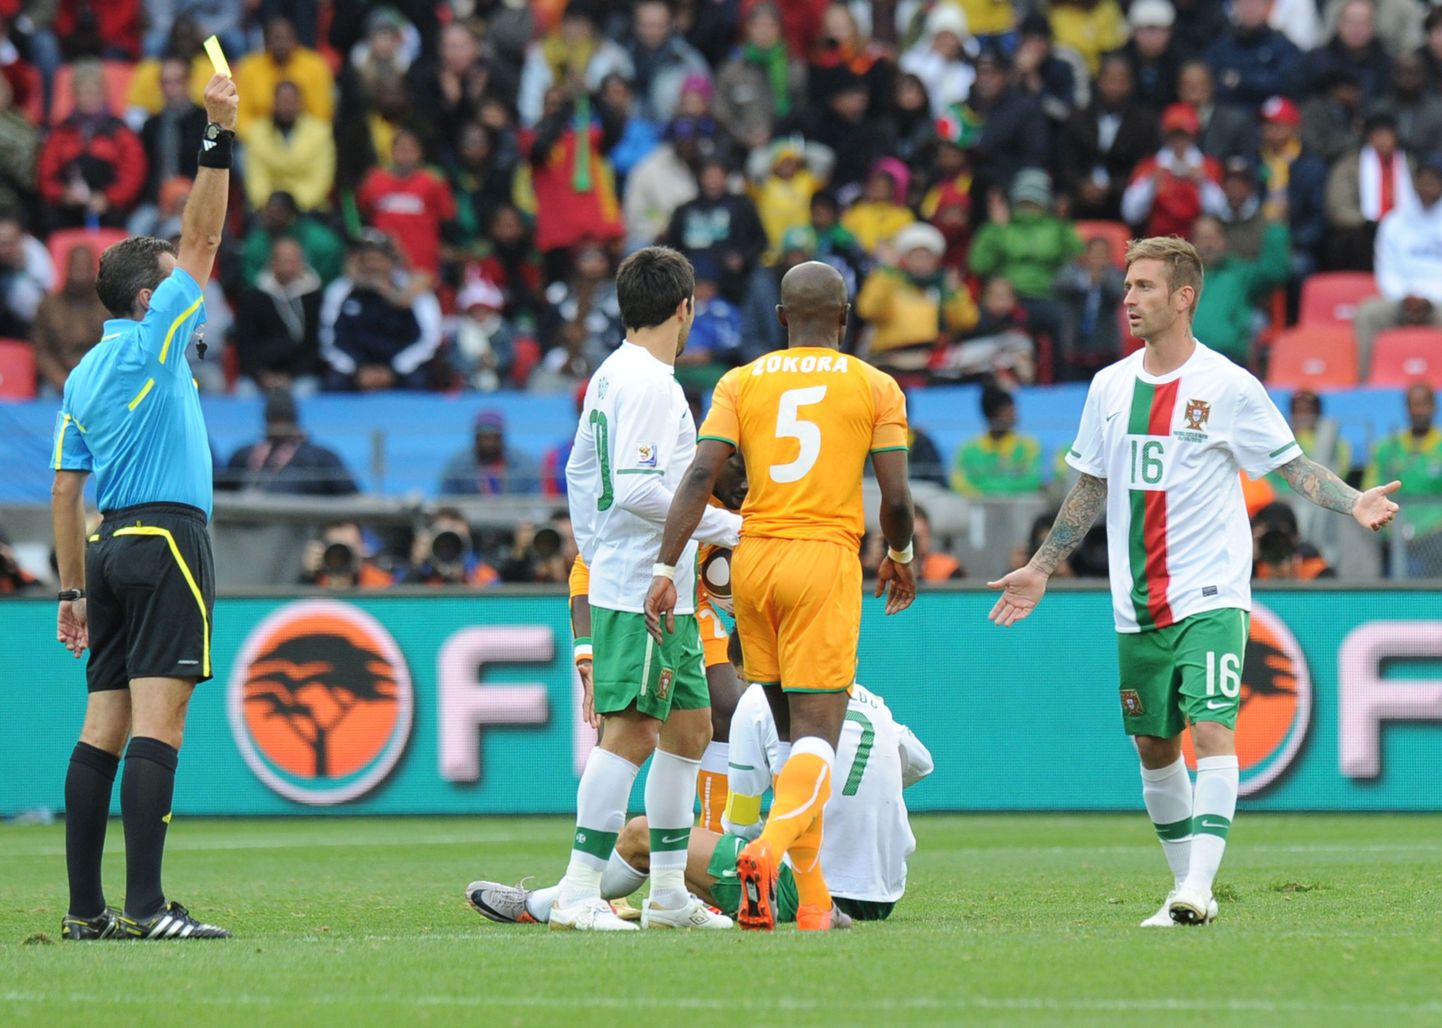 На 7 минуте матча ивуариец Зокора за фол на португальце Криштиану Роналду получил предупреждение.